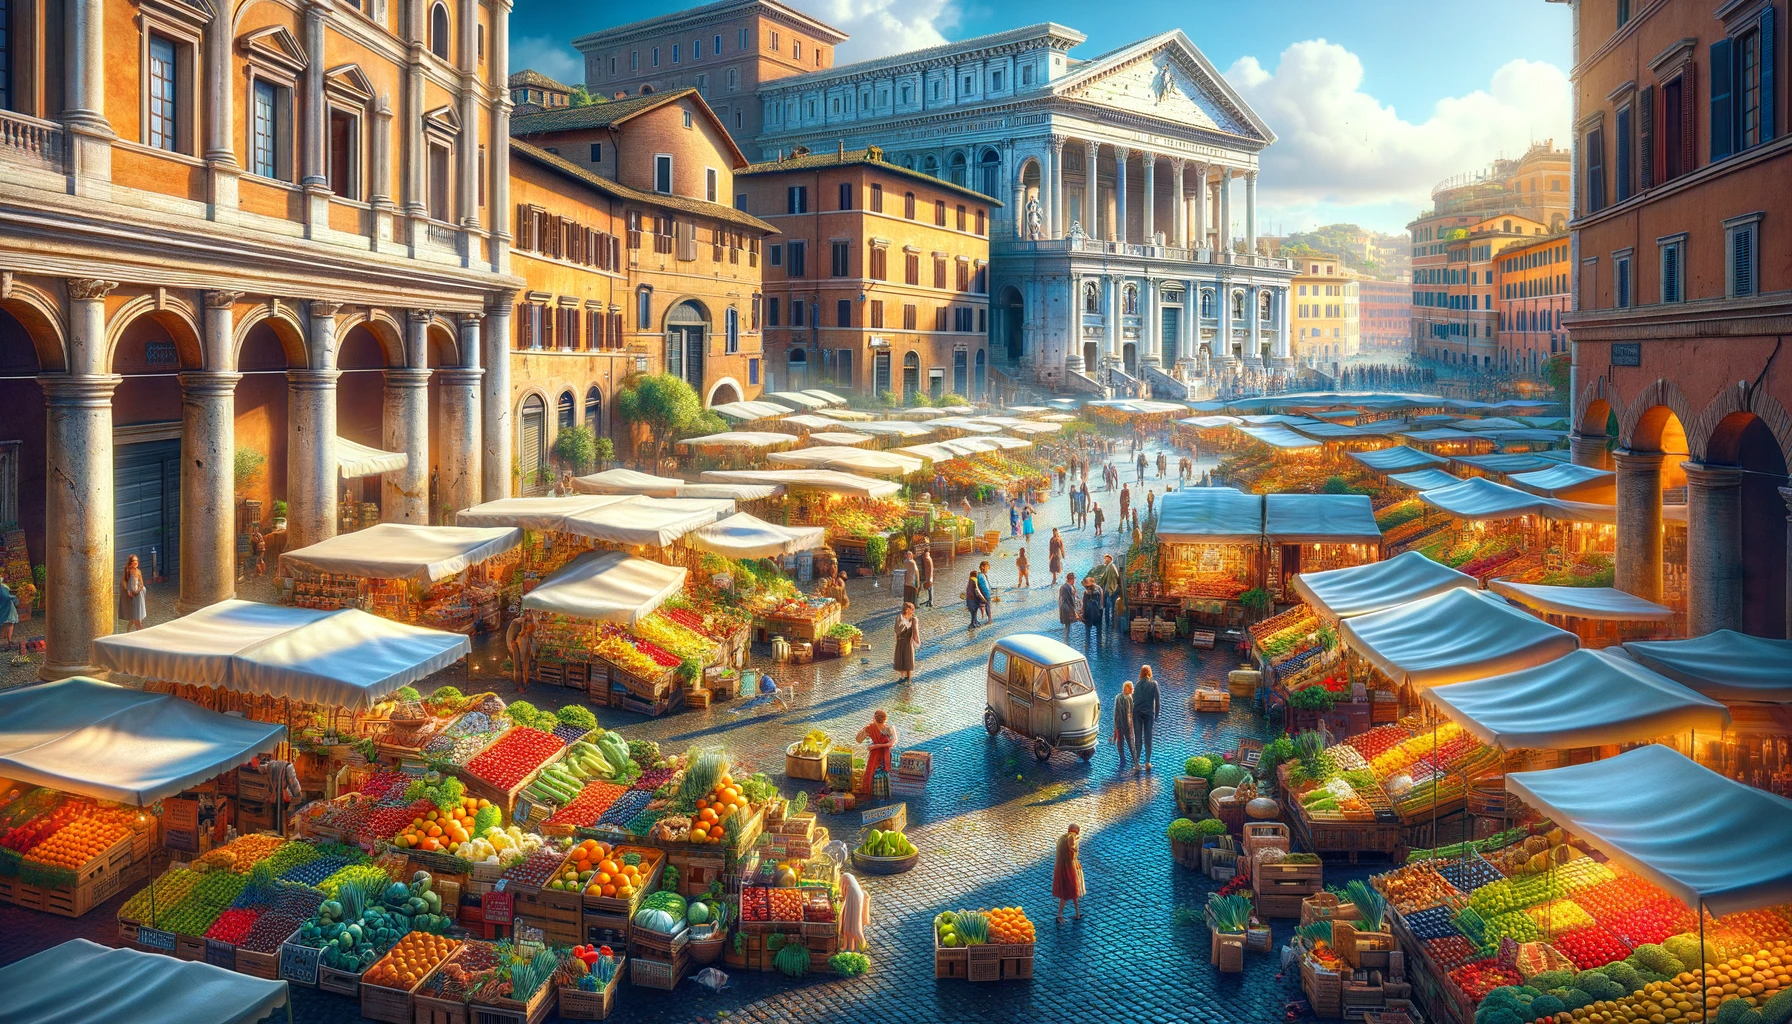 Vue panoramique des marchés populaires de Rome, mettant en avant la diversité et l'authenticité des marchés italiens